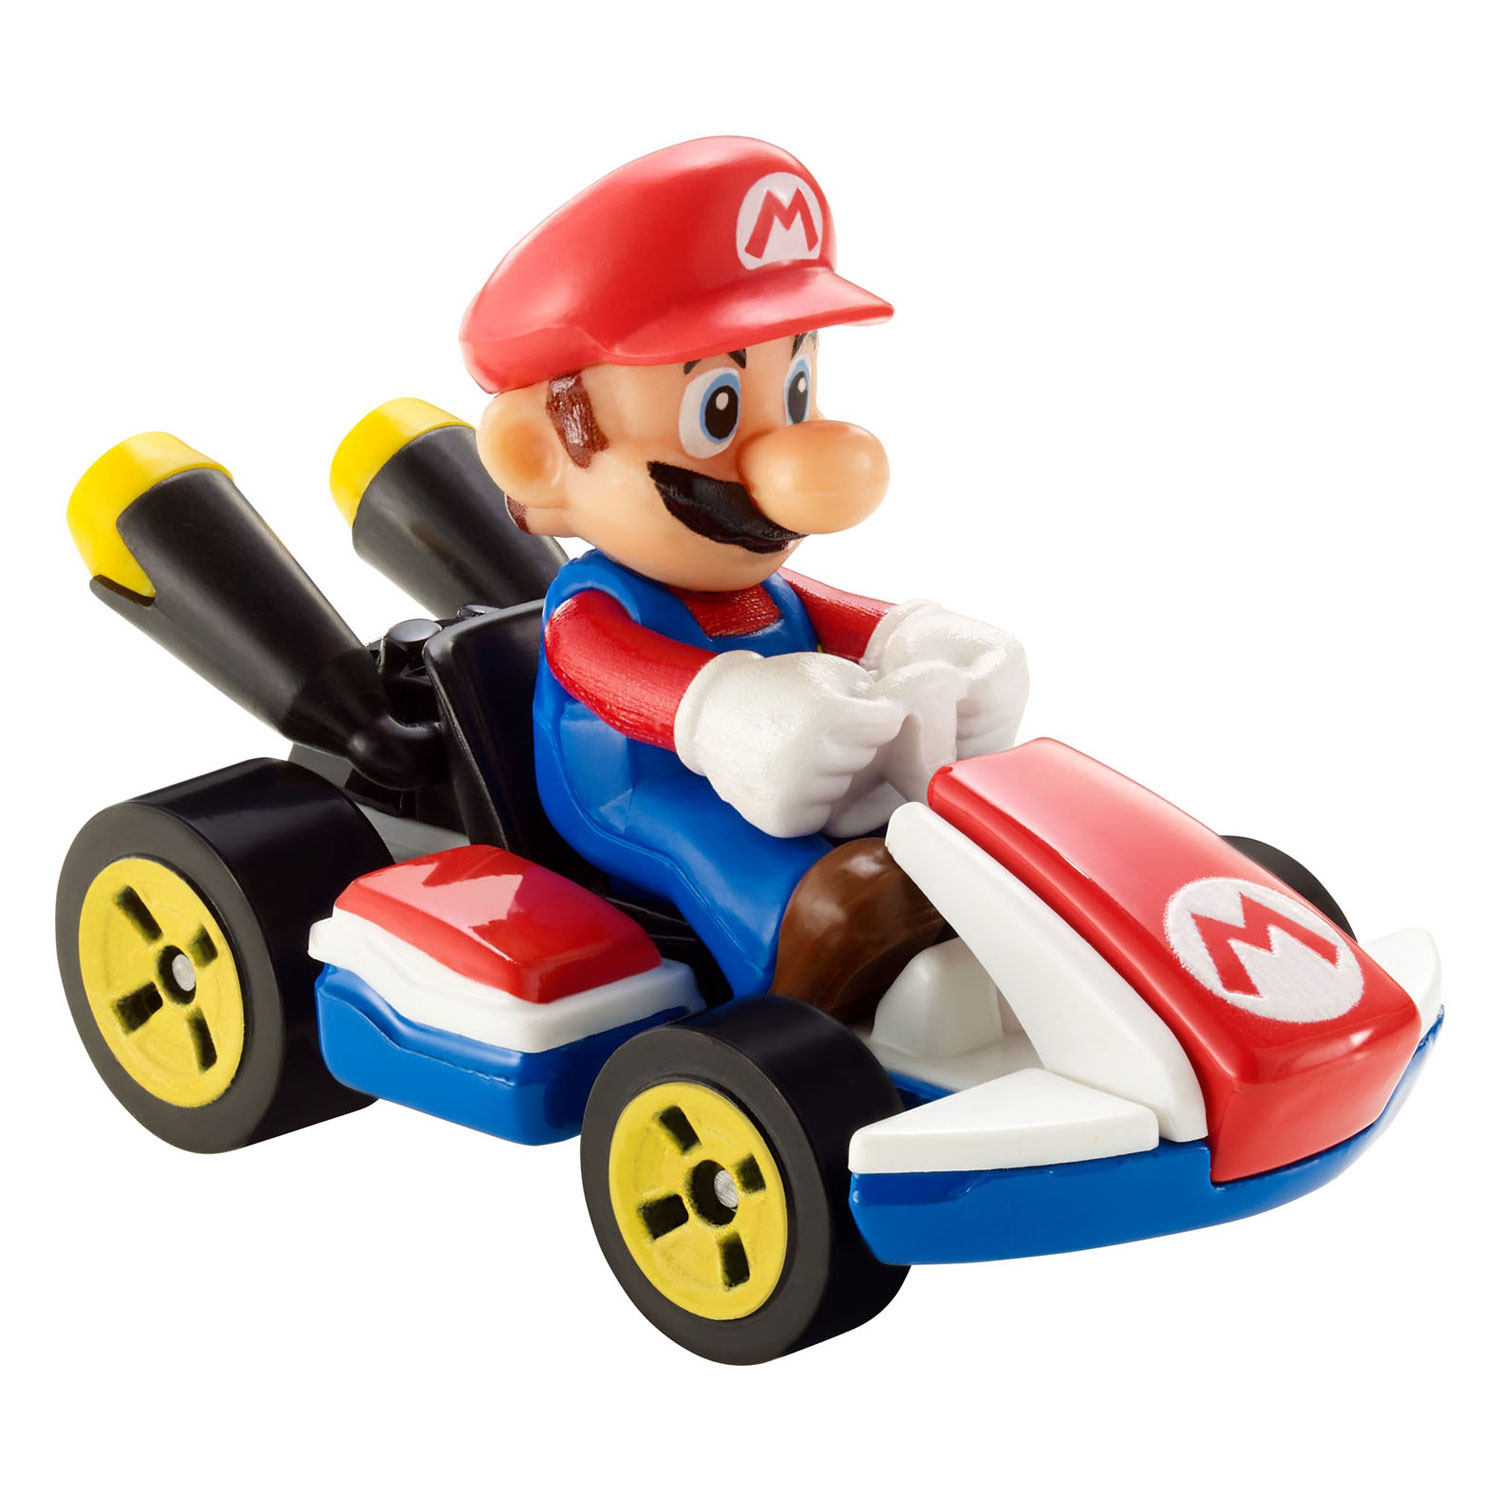 Hot Wheels Mario Kart Voertuig - Mario